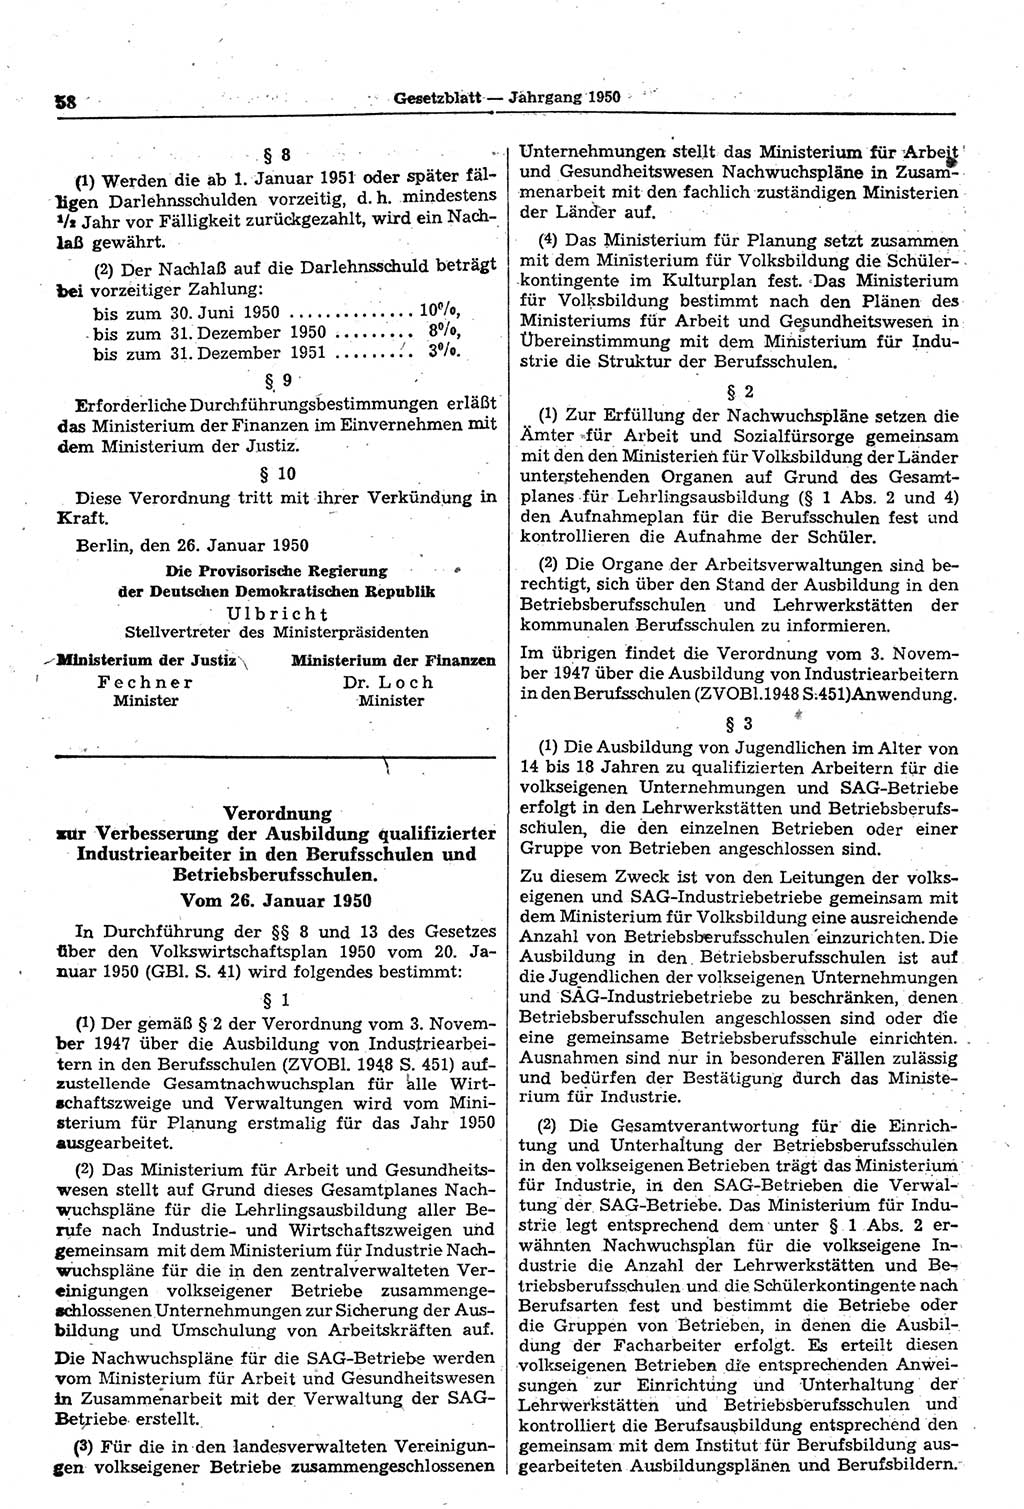 Gesetzblatt (GBl.) der Deutschen Demokratischen Republik (DDR) 1950, Seite 58 (GBl. DDR 1950, S. 58)